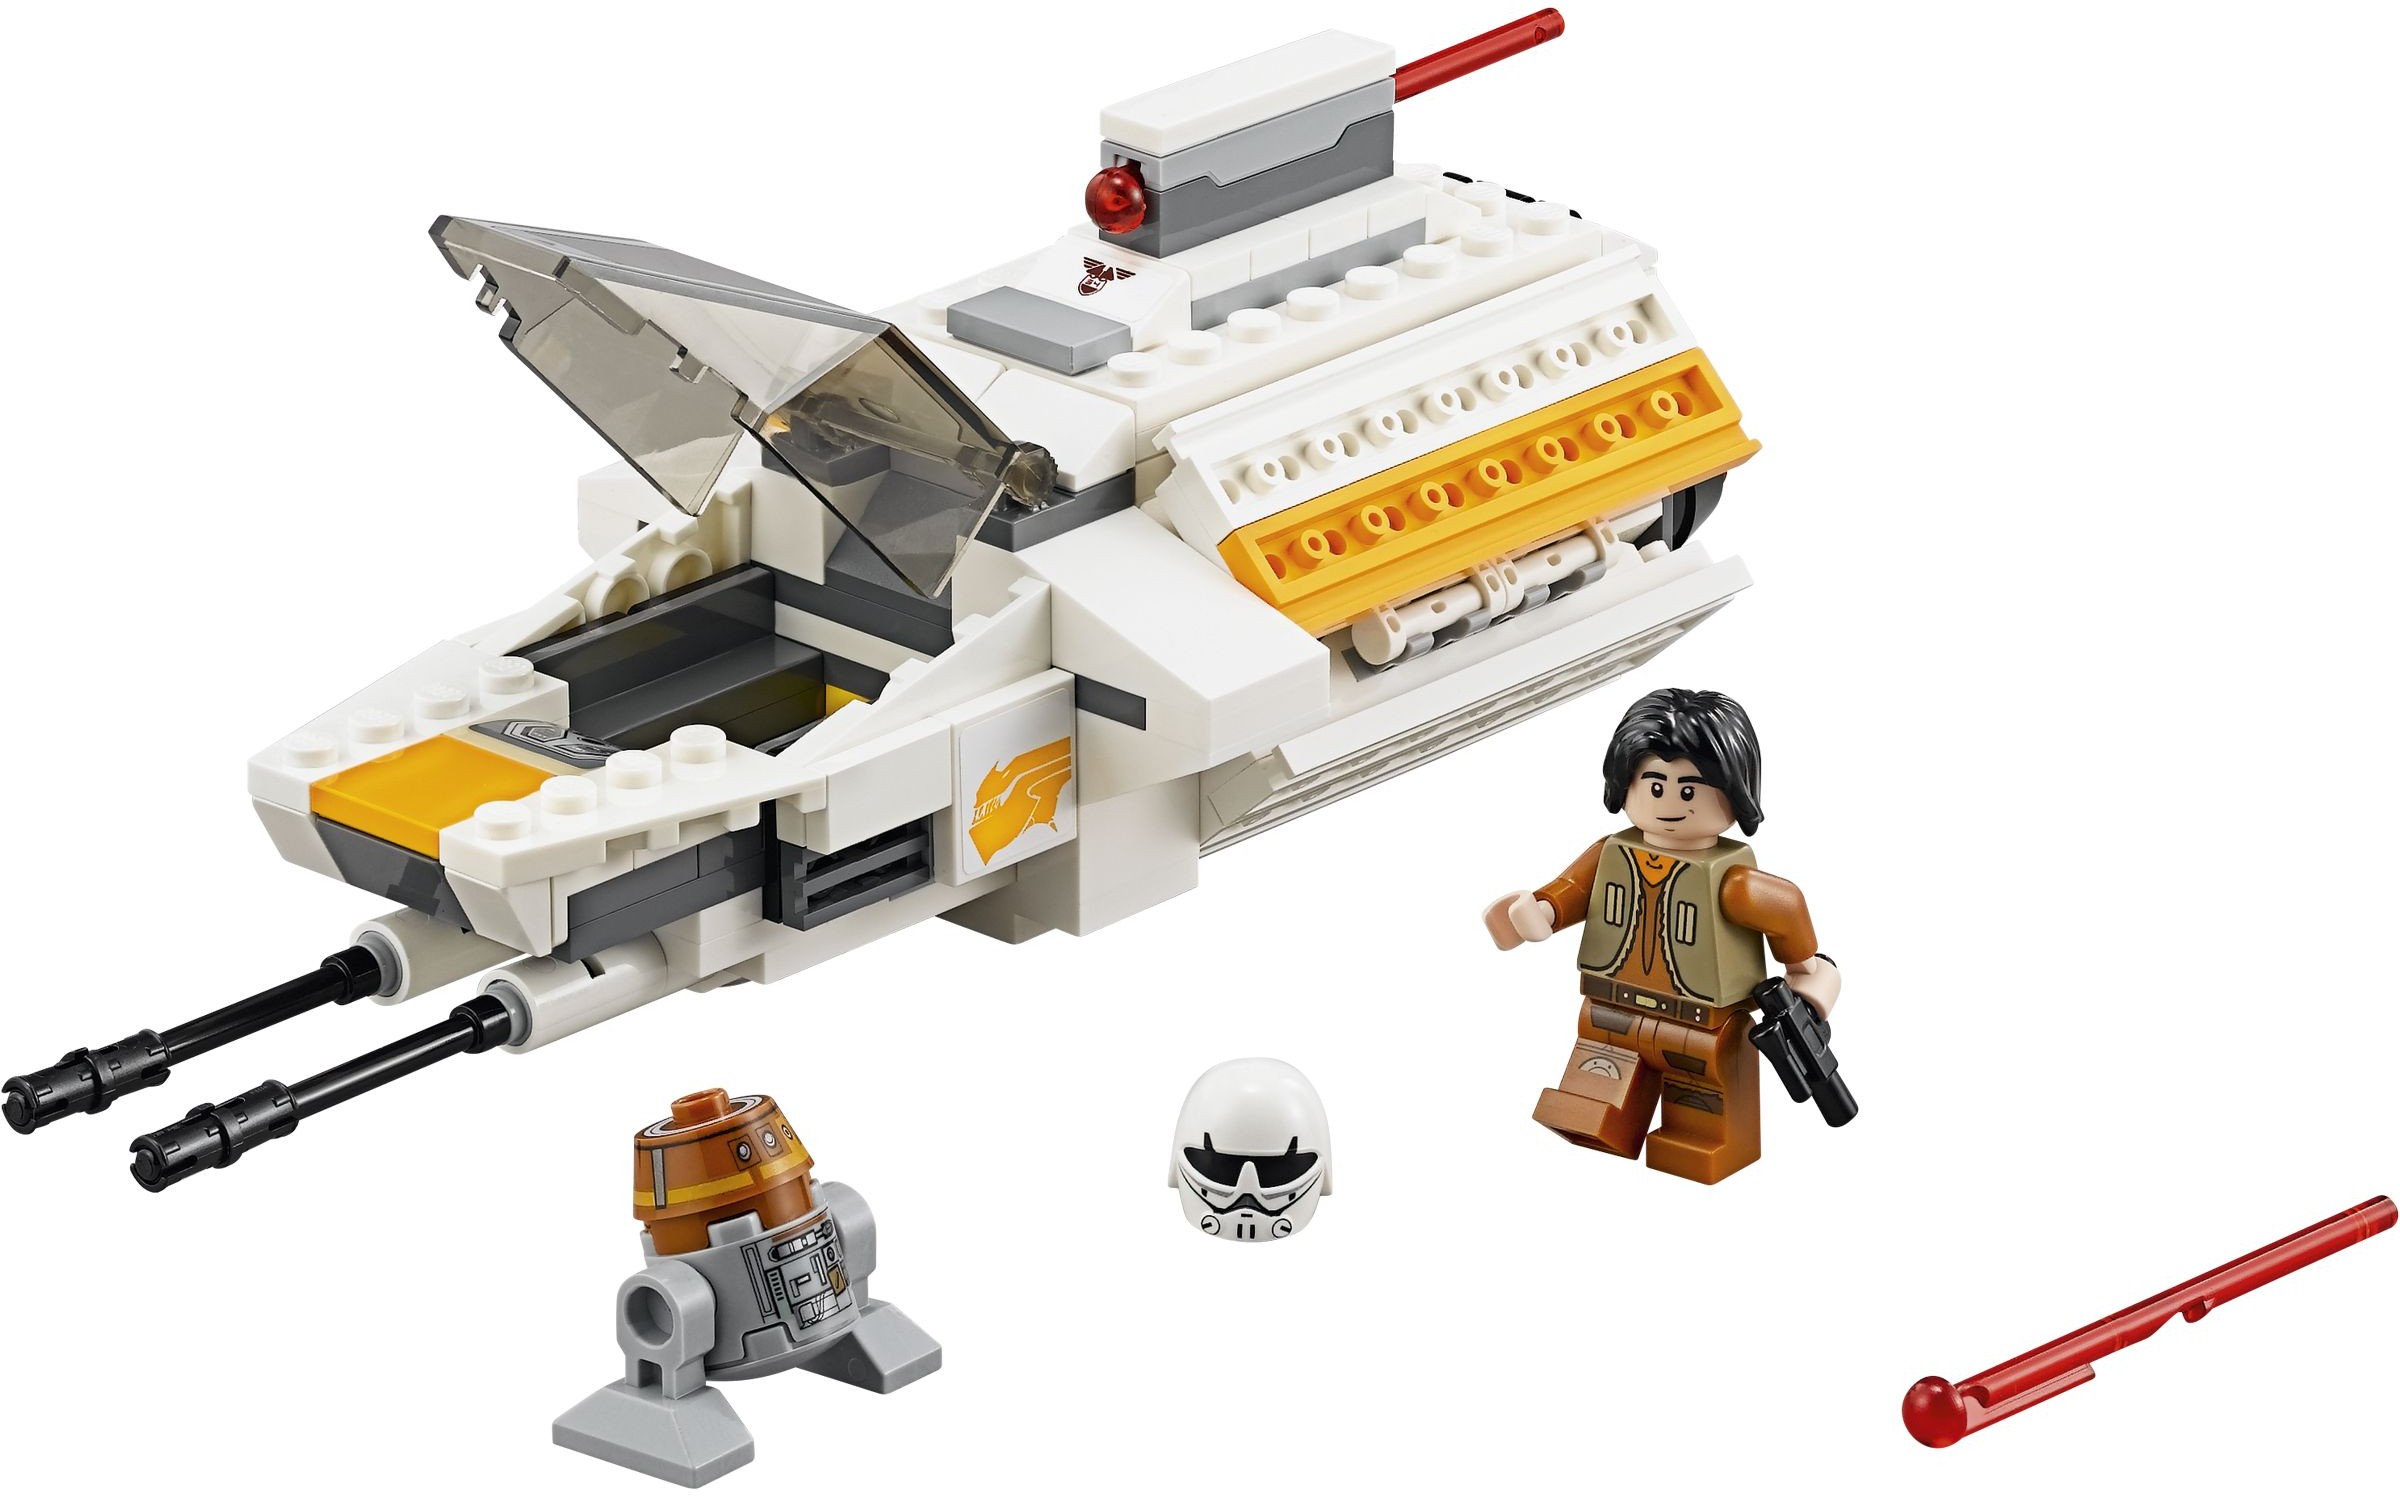 NEW Lego Star Wars Rebels Minifigures Ezra Bridger and C1-10P Chopper 75048!